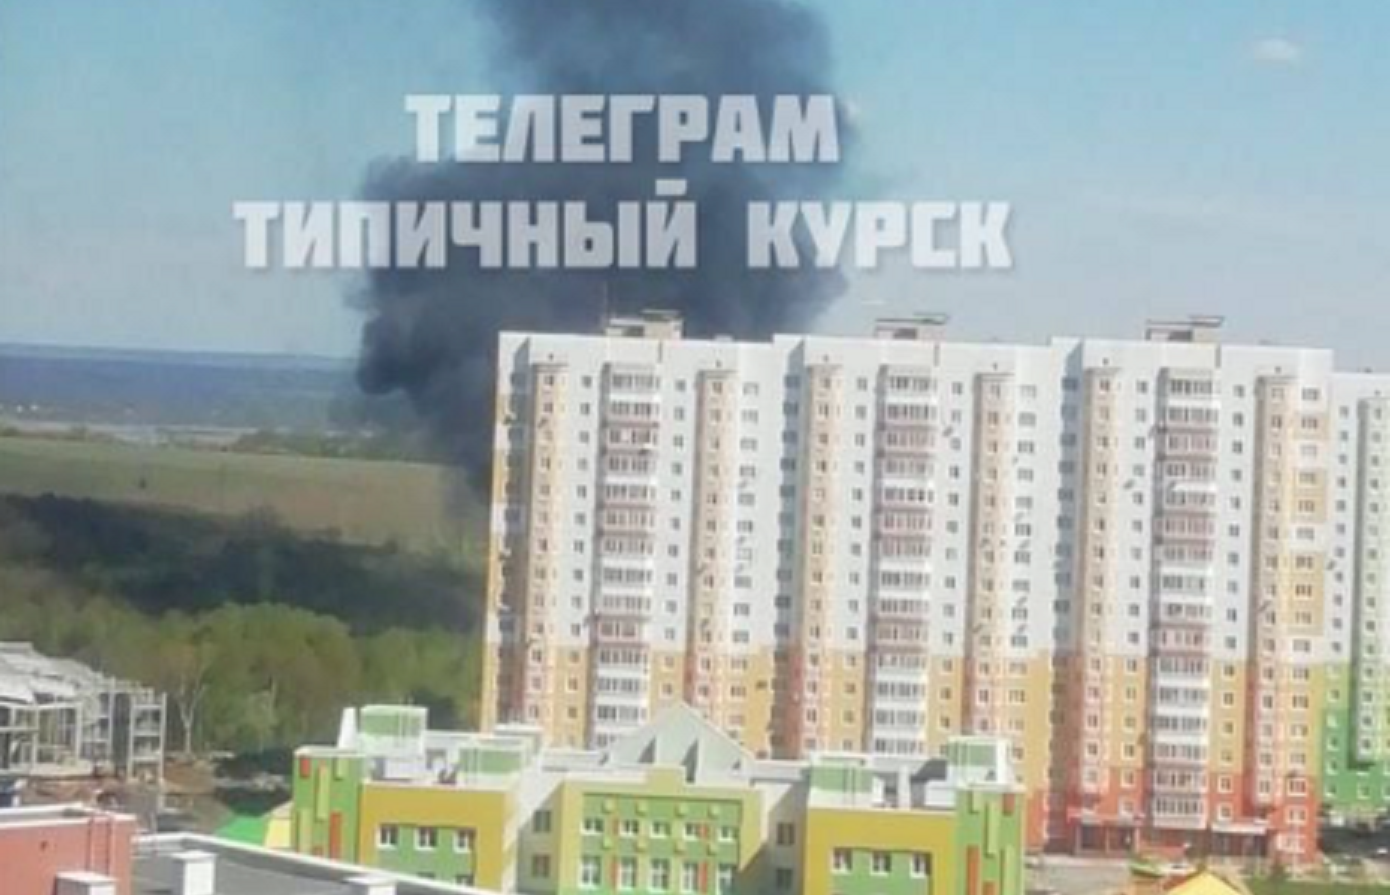 Ουκρανική αντεπίθεση με drones &#8211; Στις φλόγες δεξαμενή καυσίμων και υποσταθμοί ενέργειας στη Ρωσία